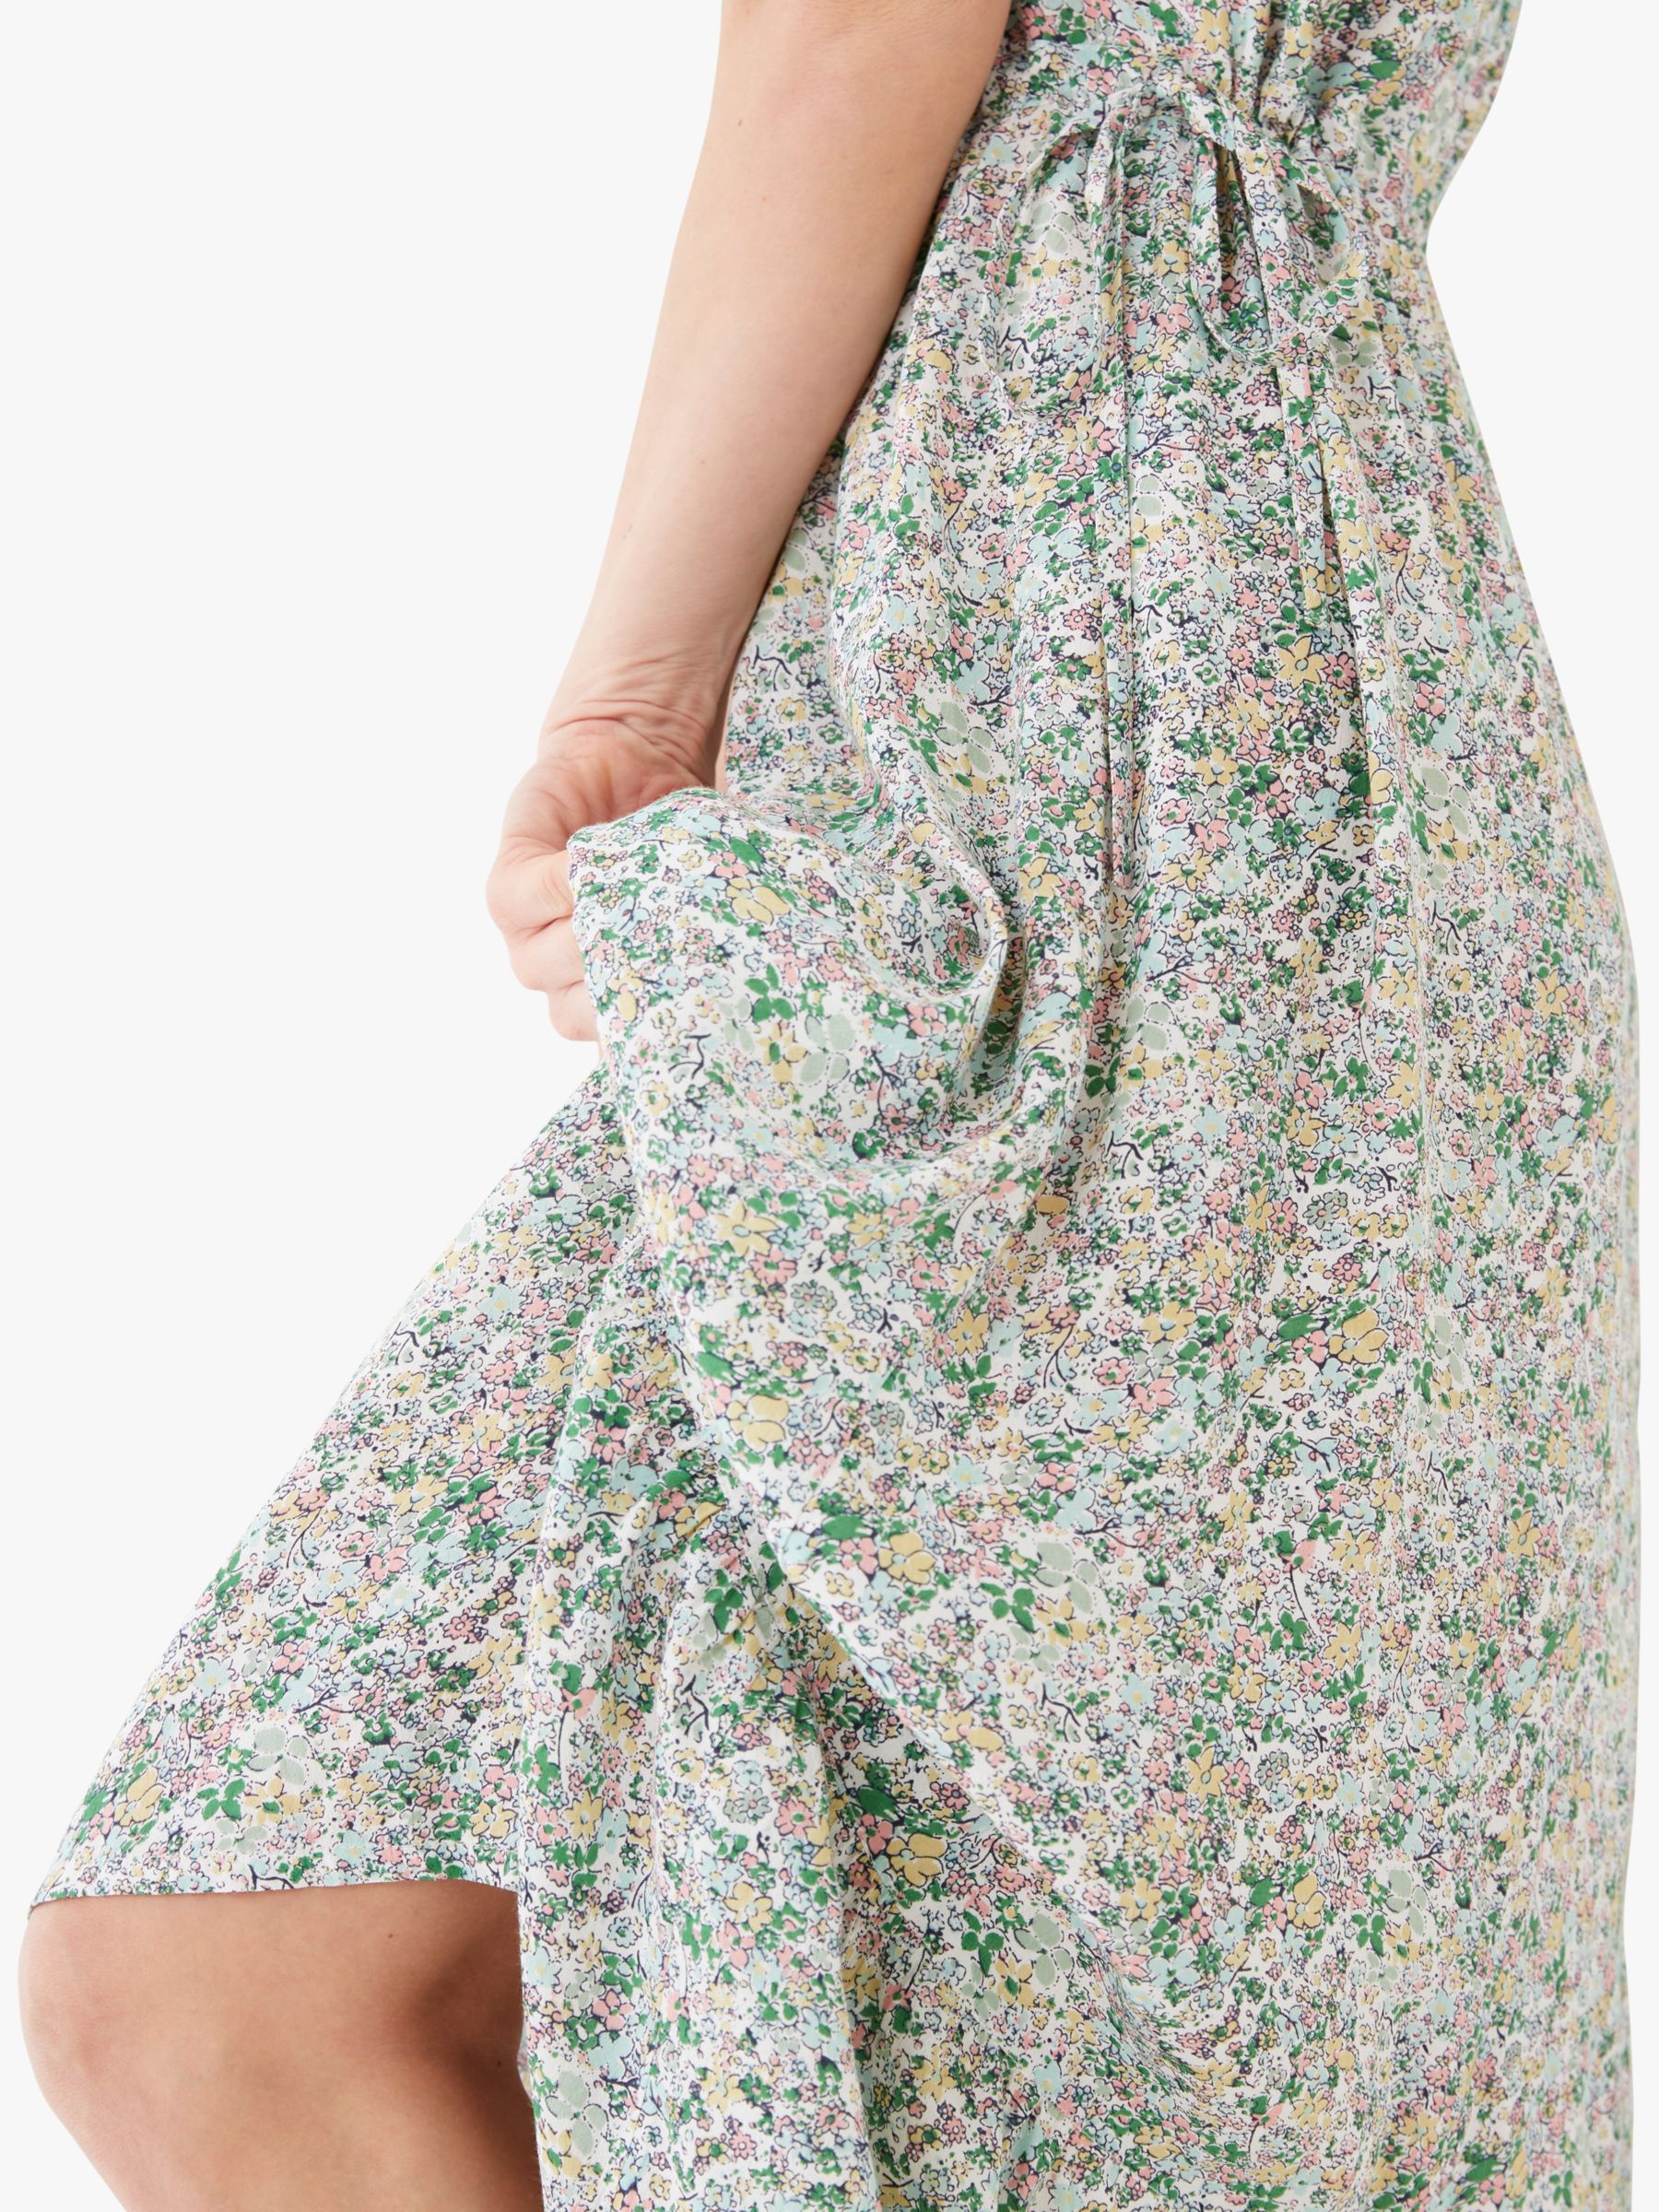 Fatface Rochelle Sugar Floral Print Maxi Dress Multi